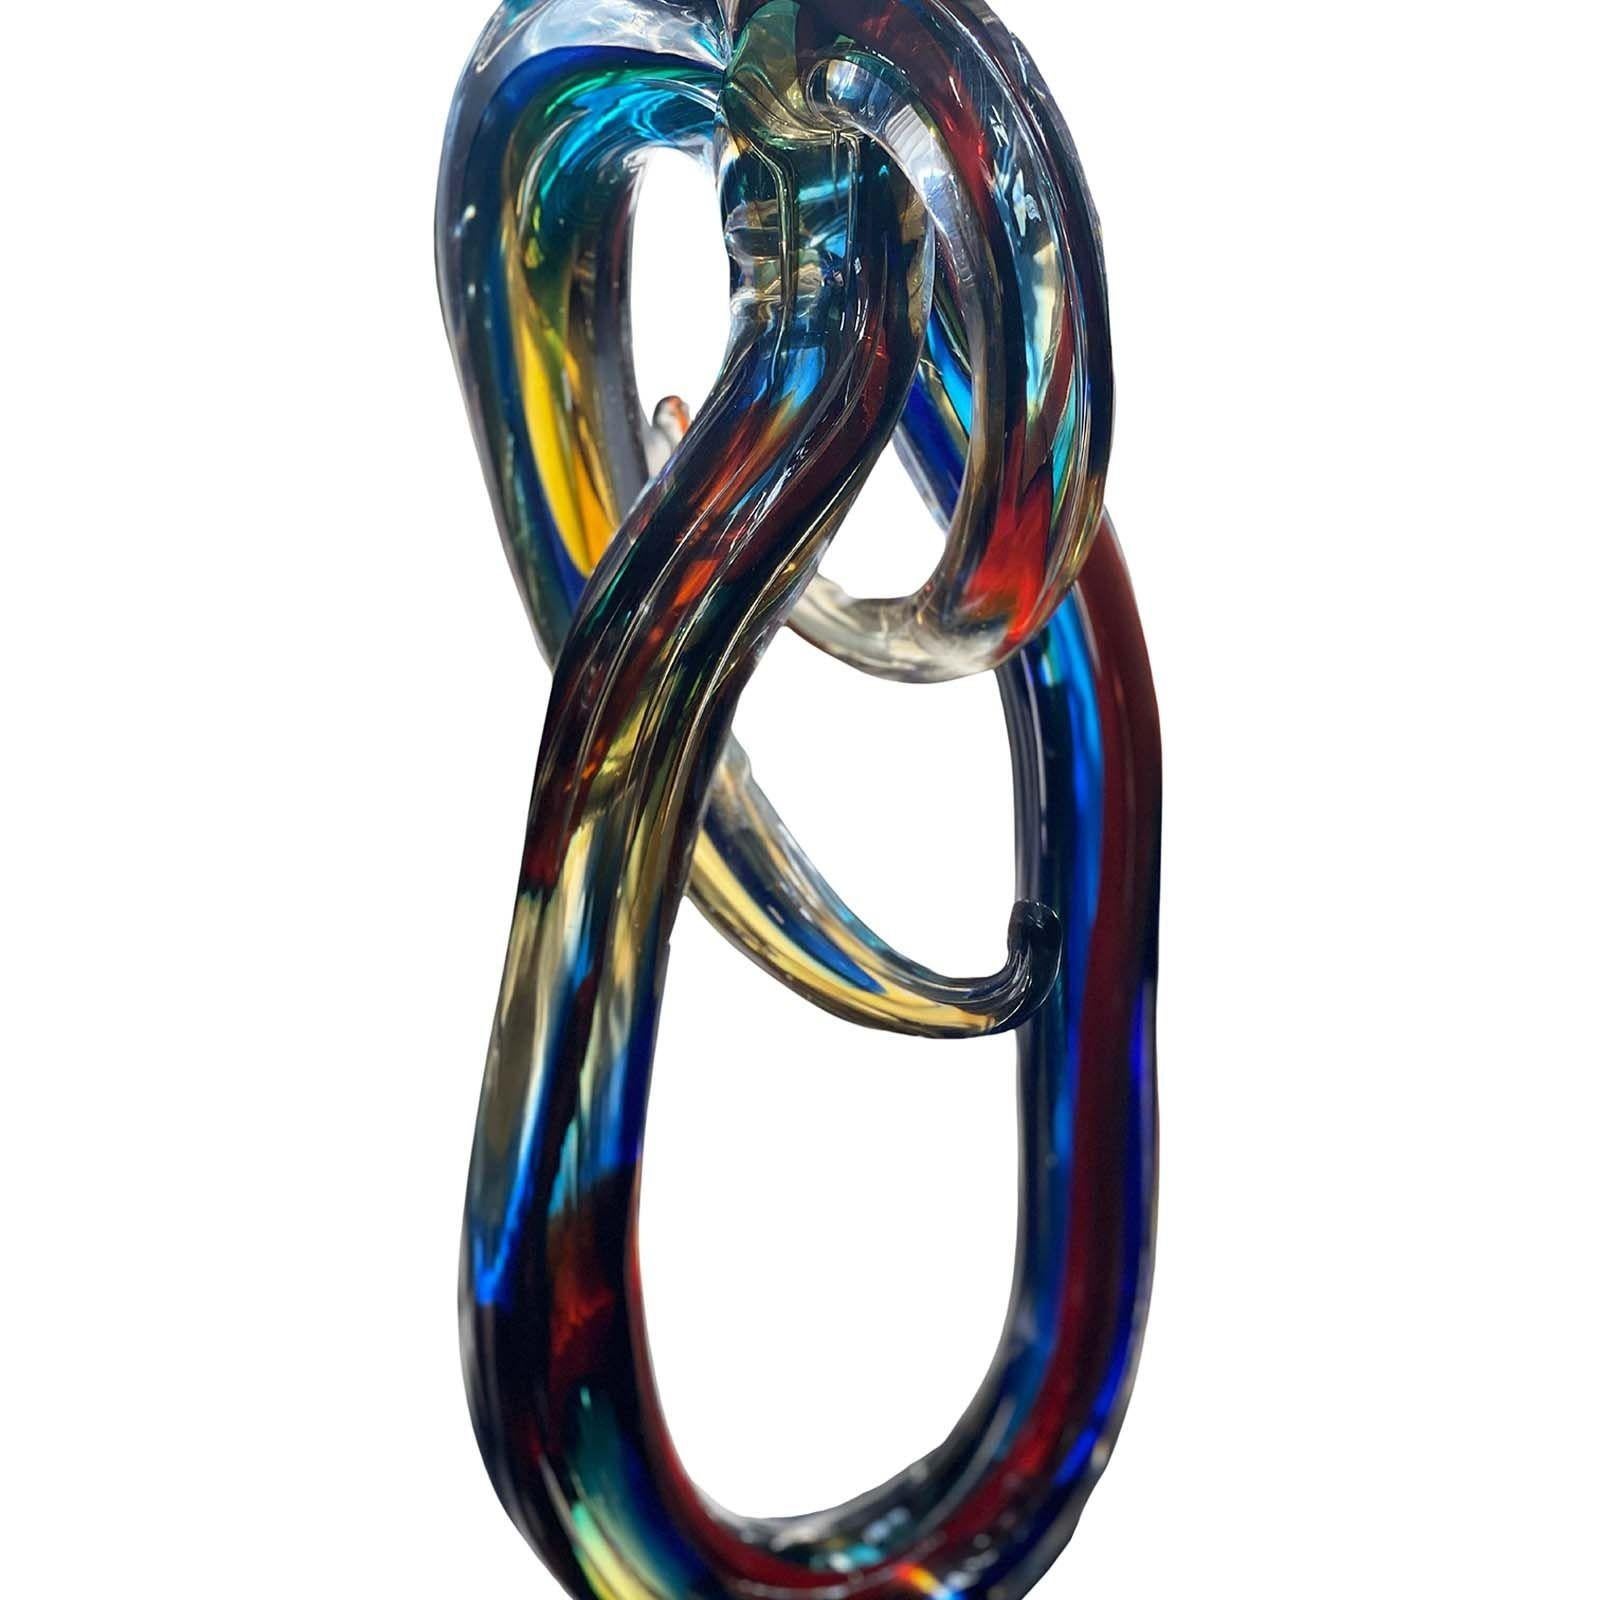 Sculpture abstraite multicolore en verre de Murano sur un vase en verre noir par Sergio Costantini (signé) Fabriqué en Italie, 20e siècle.
Dimensions :
22